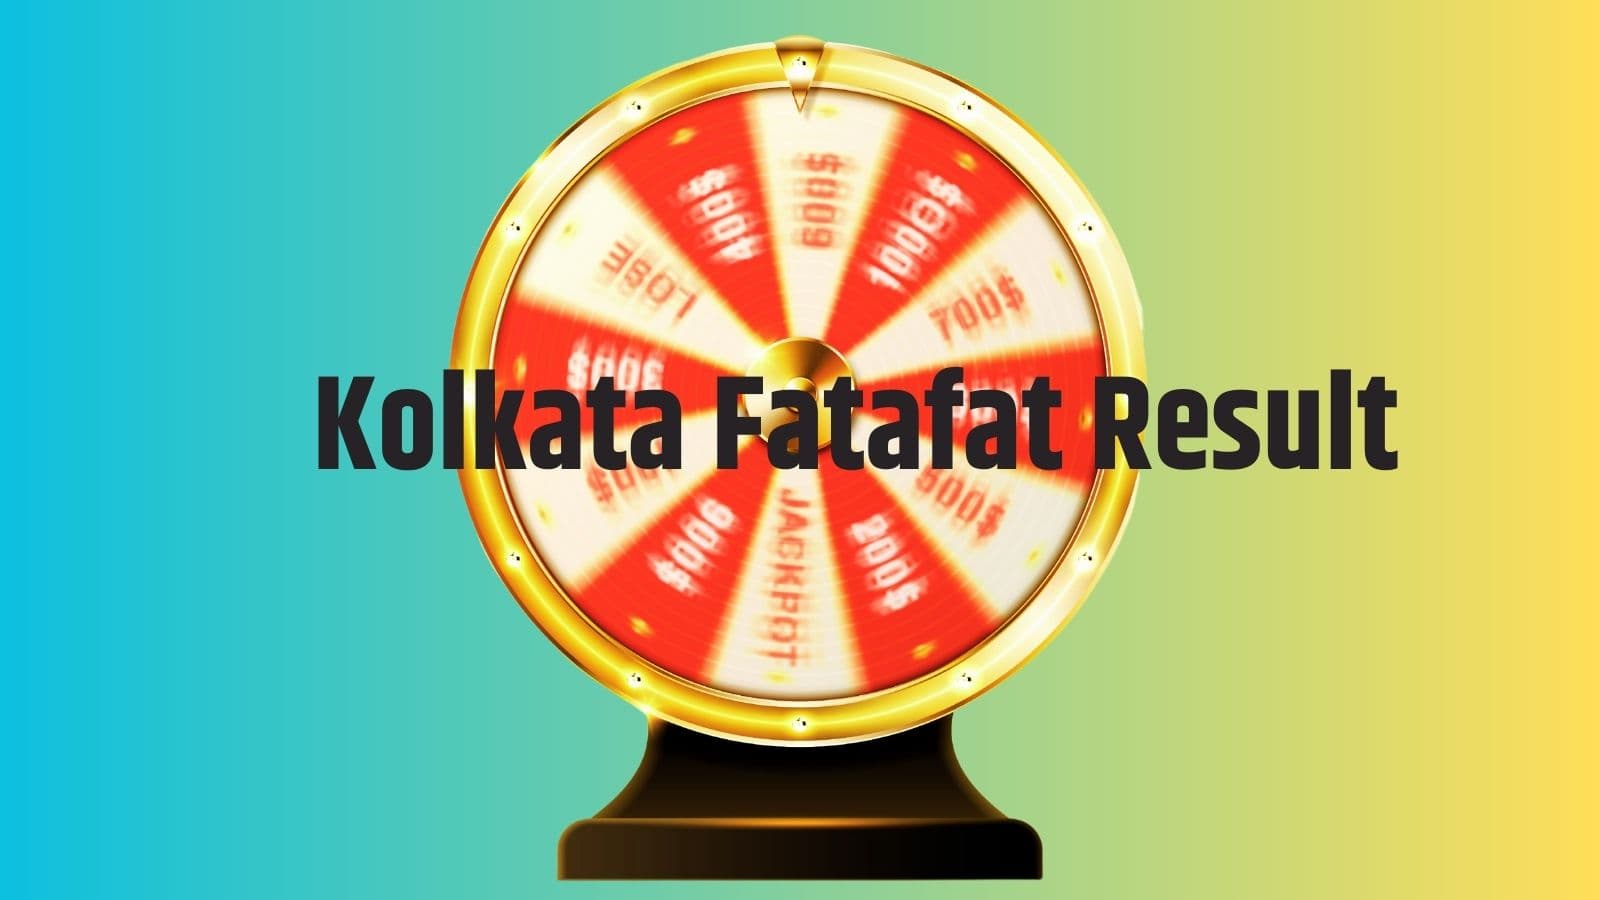 Kolkata FF Fatafat Today Result: Check Kolkata FF result live